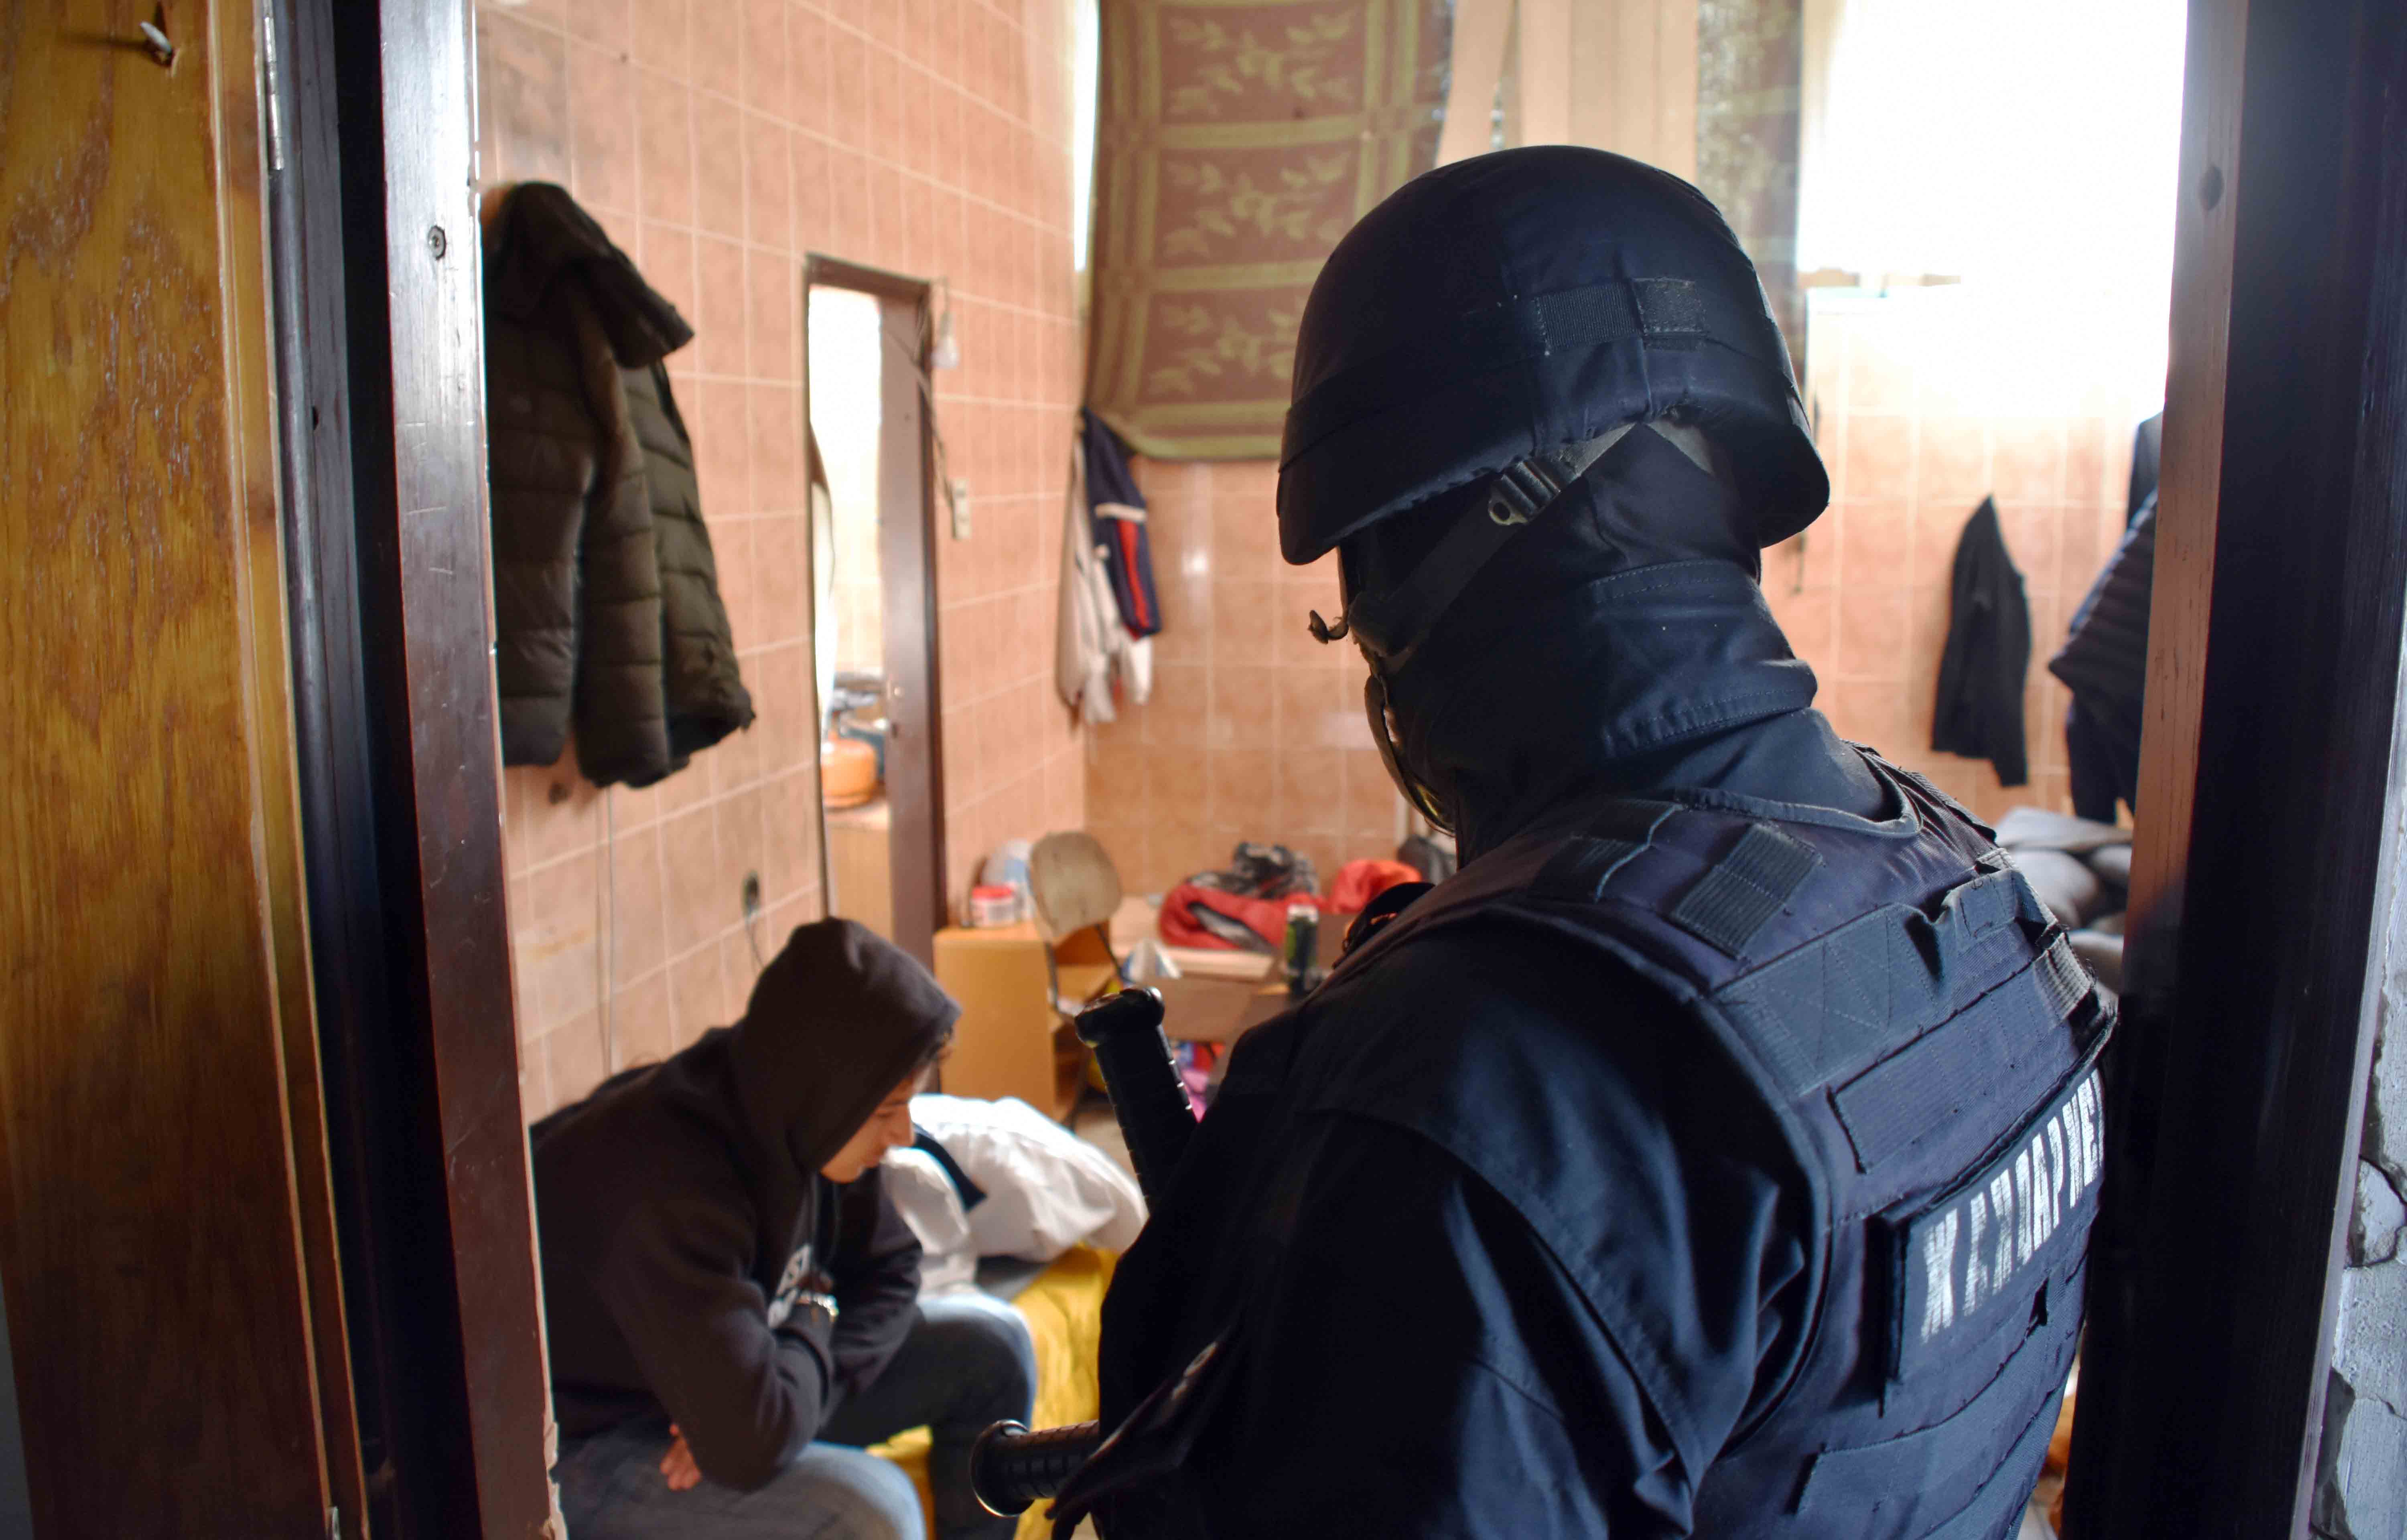 Полиција на територији Полицијске управе Кикинда спровела акцију идентификовања безбедносно интересантних ирегуларних миграната